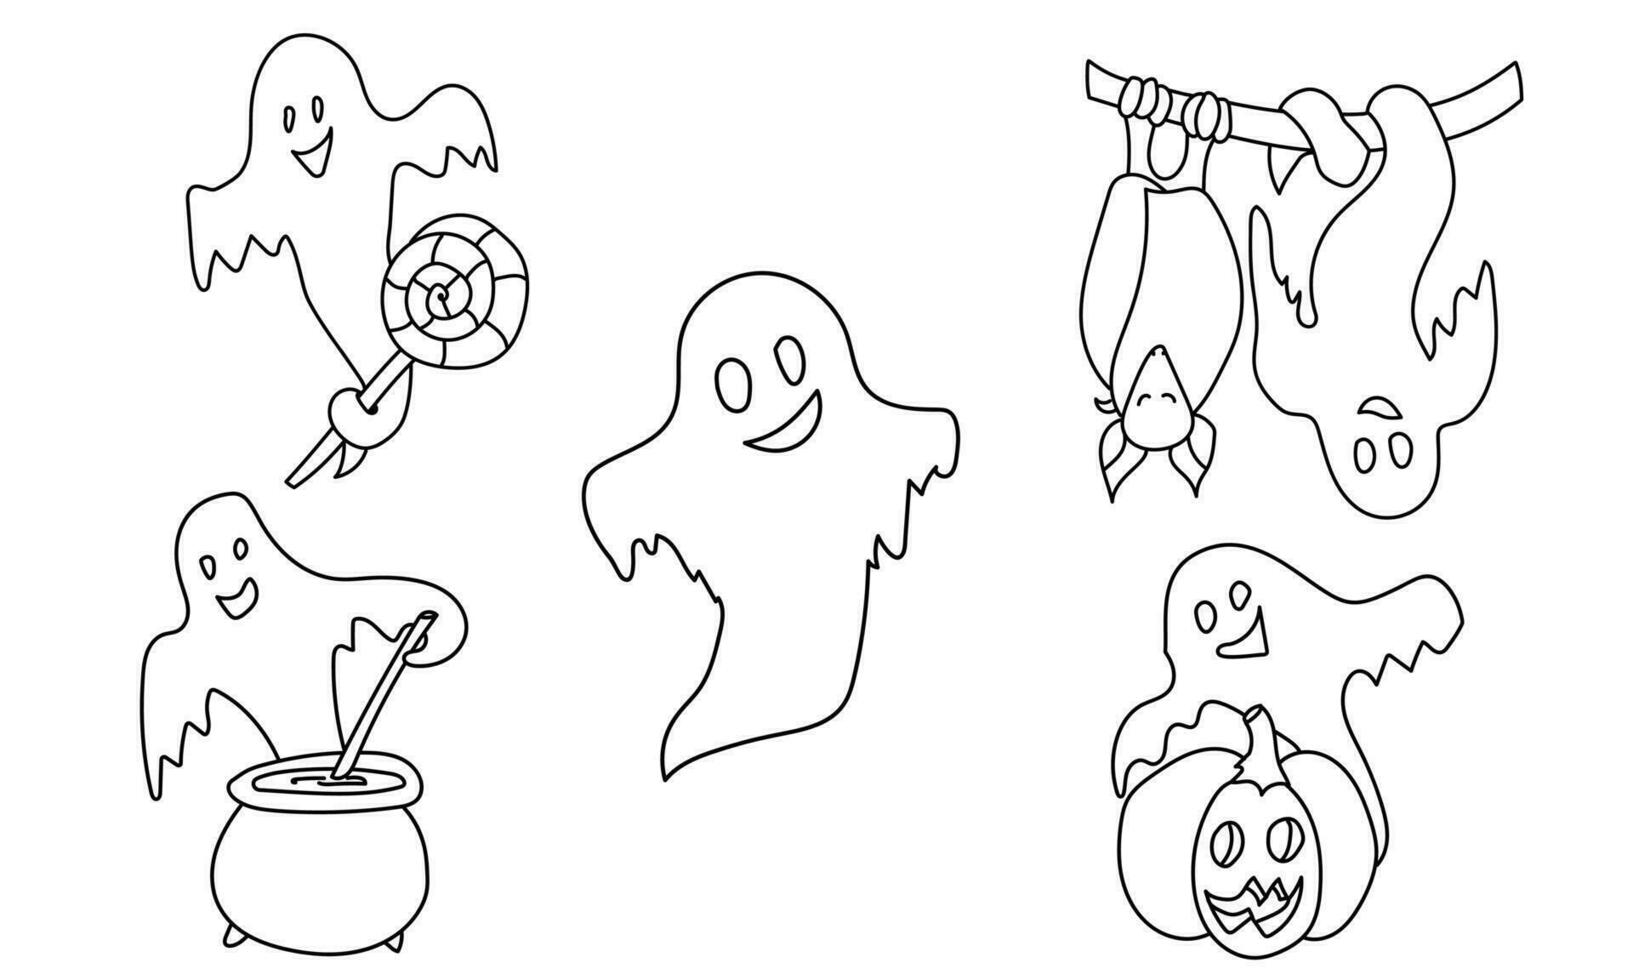 reeks van schets schattig geesten in tekening stijl, halloween kleur bladzijde voor vakantie werkzaamheid vector